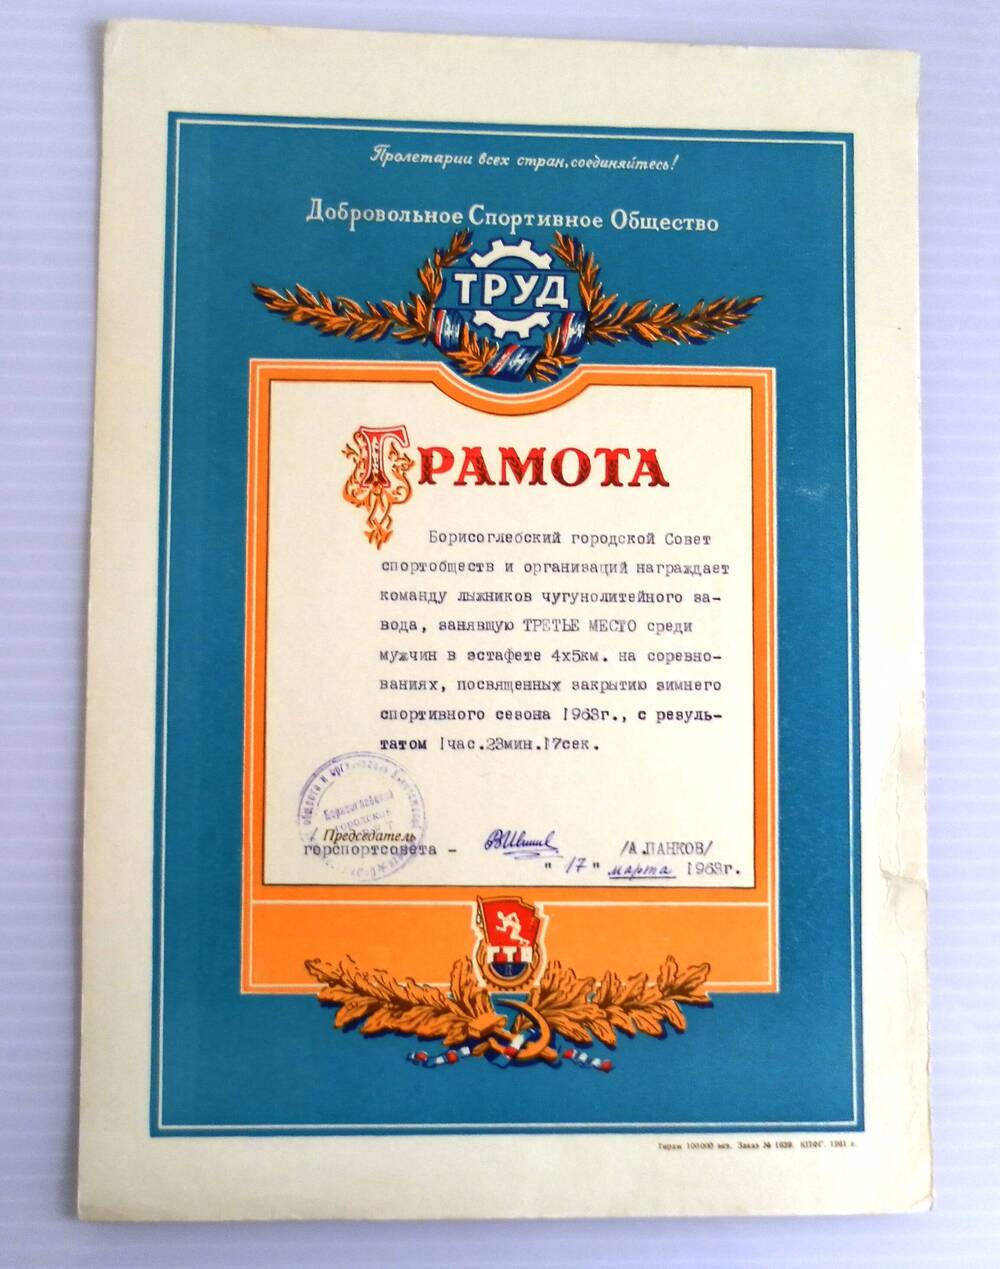 Грамота Борисоглебского городского Совета спортобществ и организаций команде лыжников чугунолитейного завода.